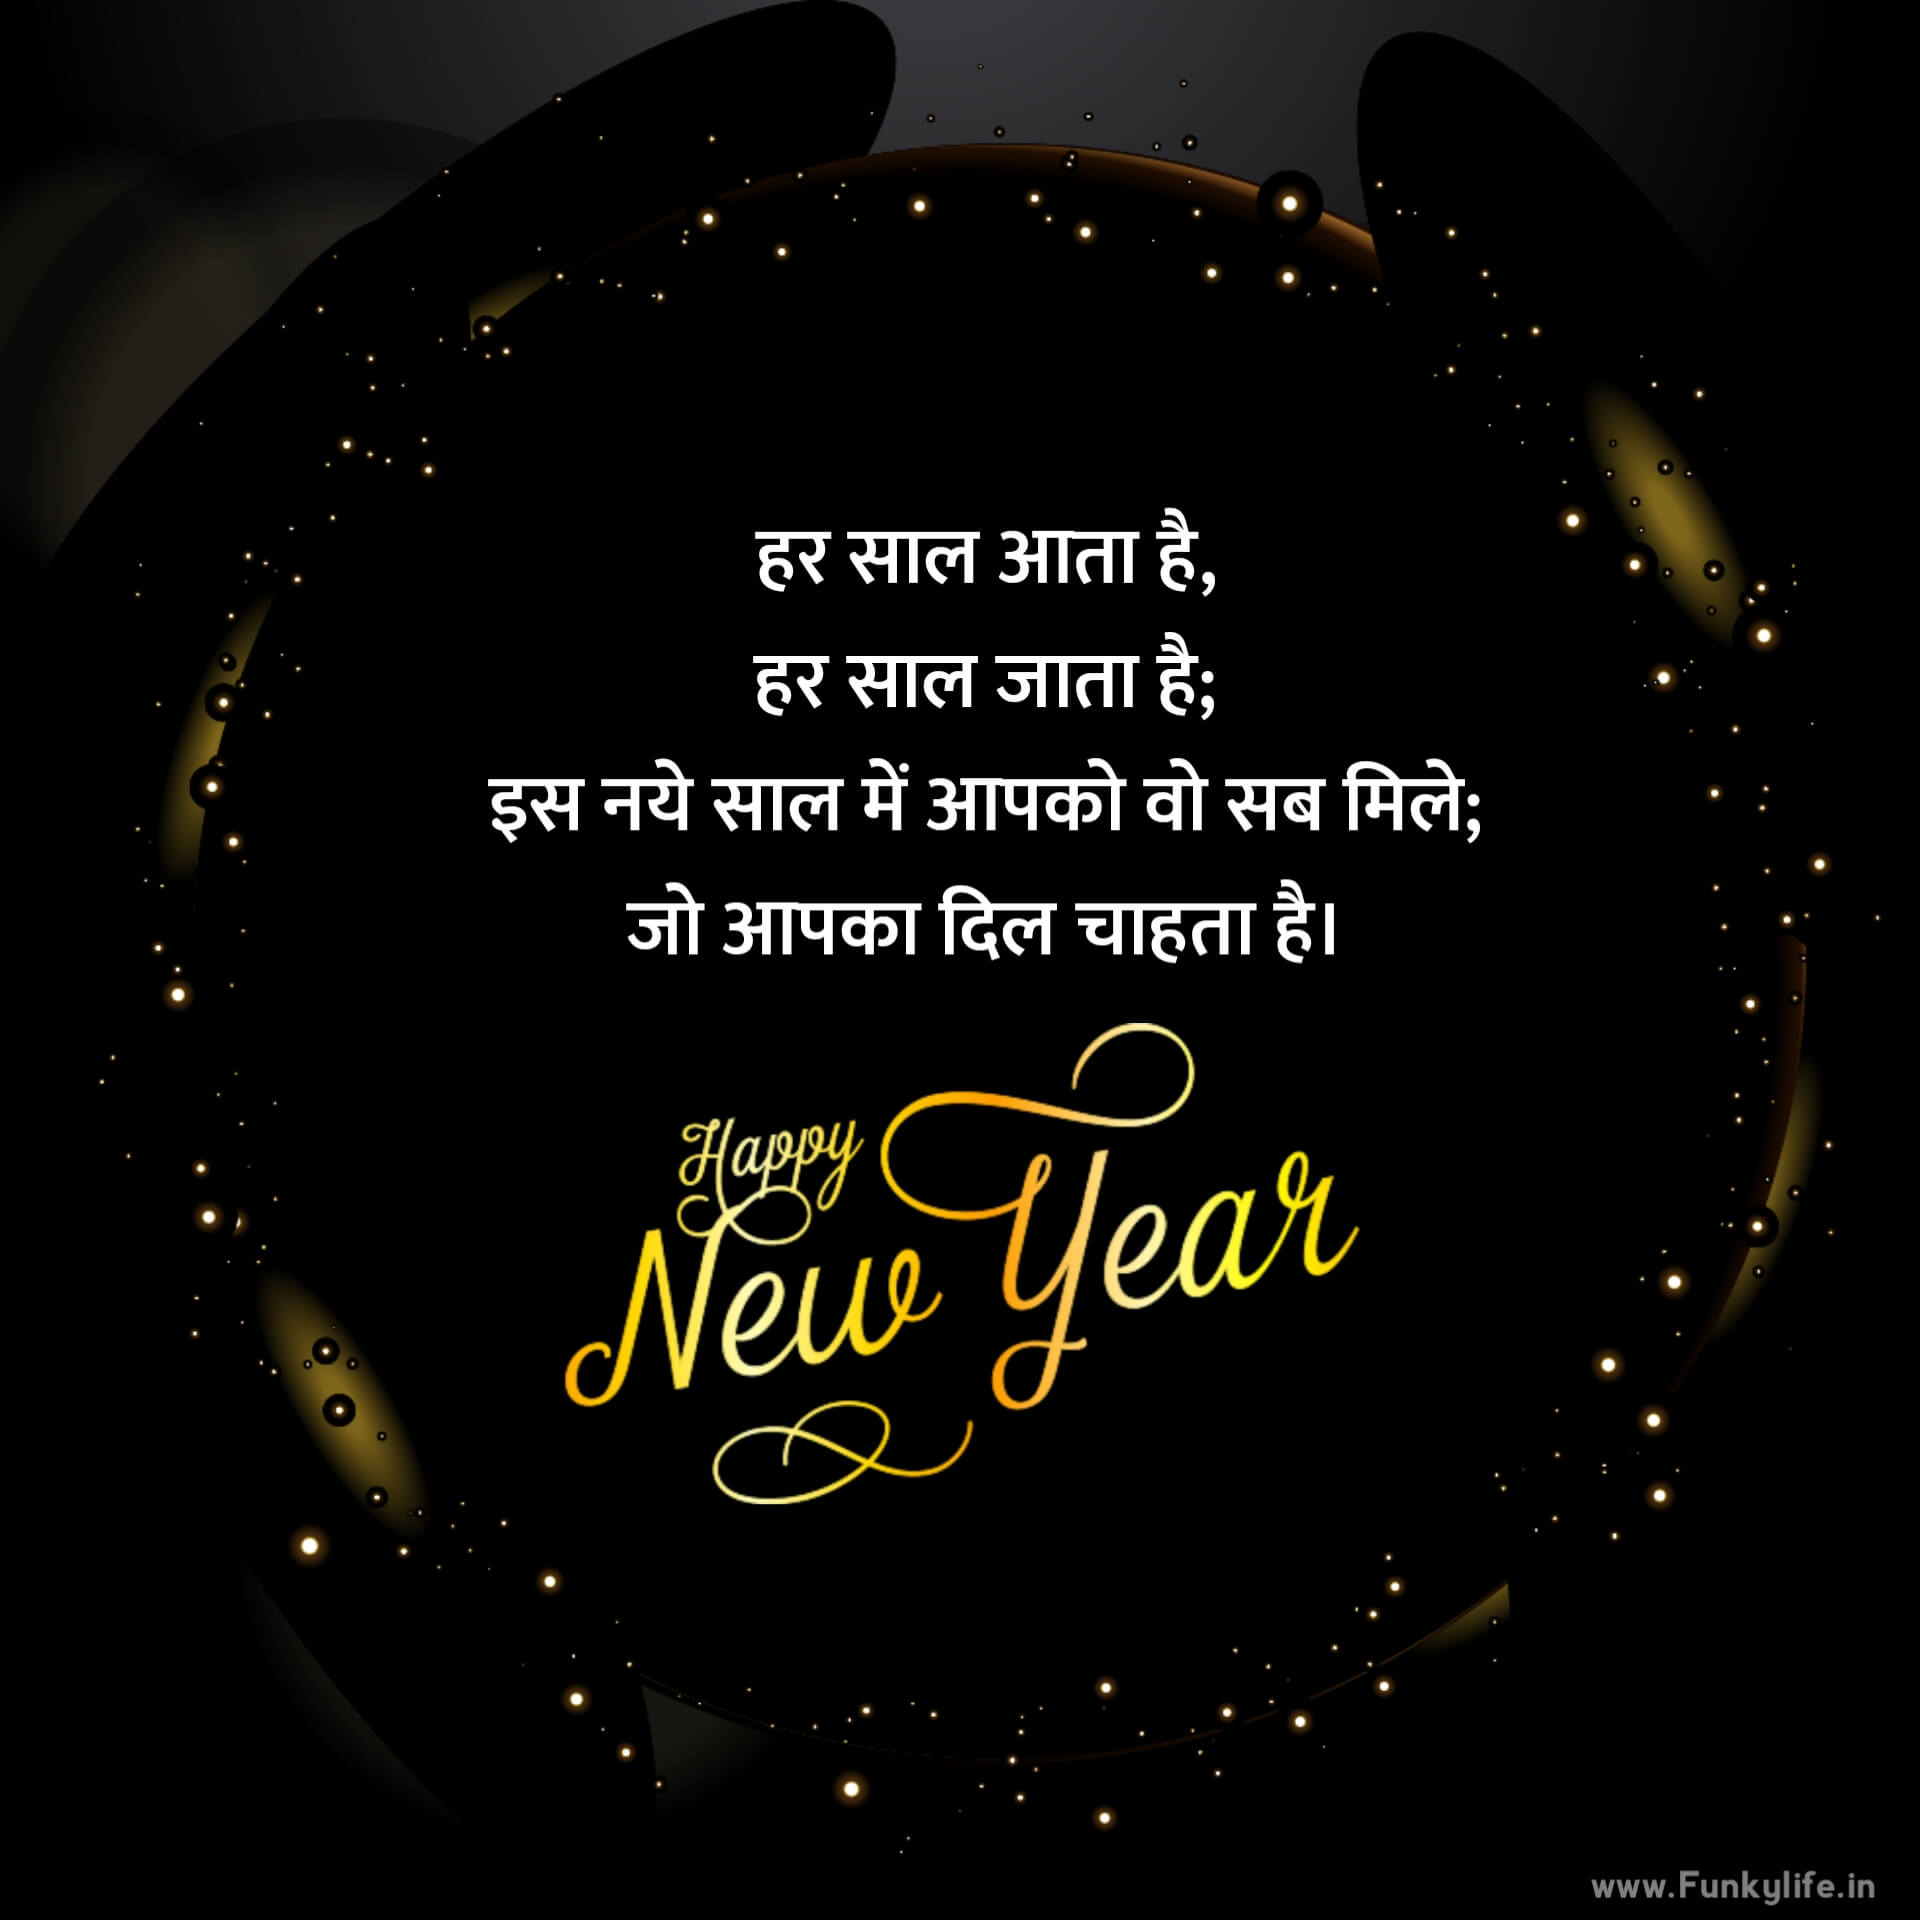 Happy New Year Wishes in Hindi 2022 - नव वर्ष की शुभकामनाएं हिंदी में